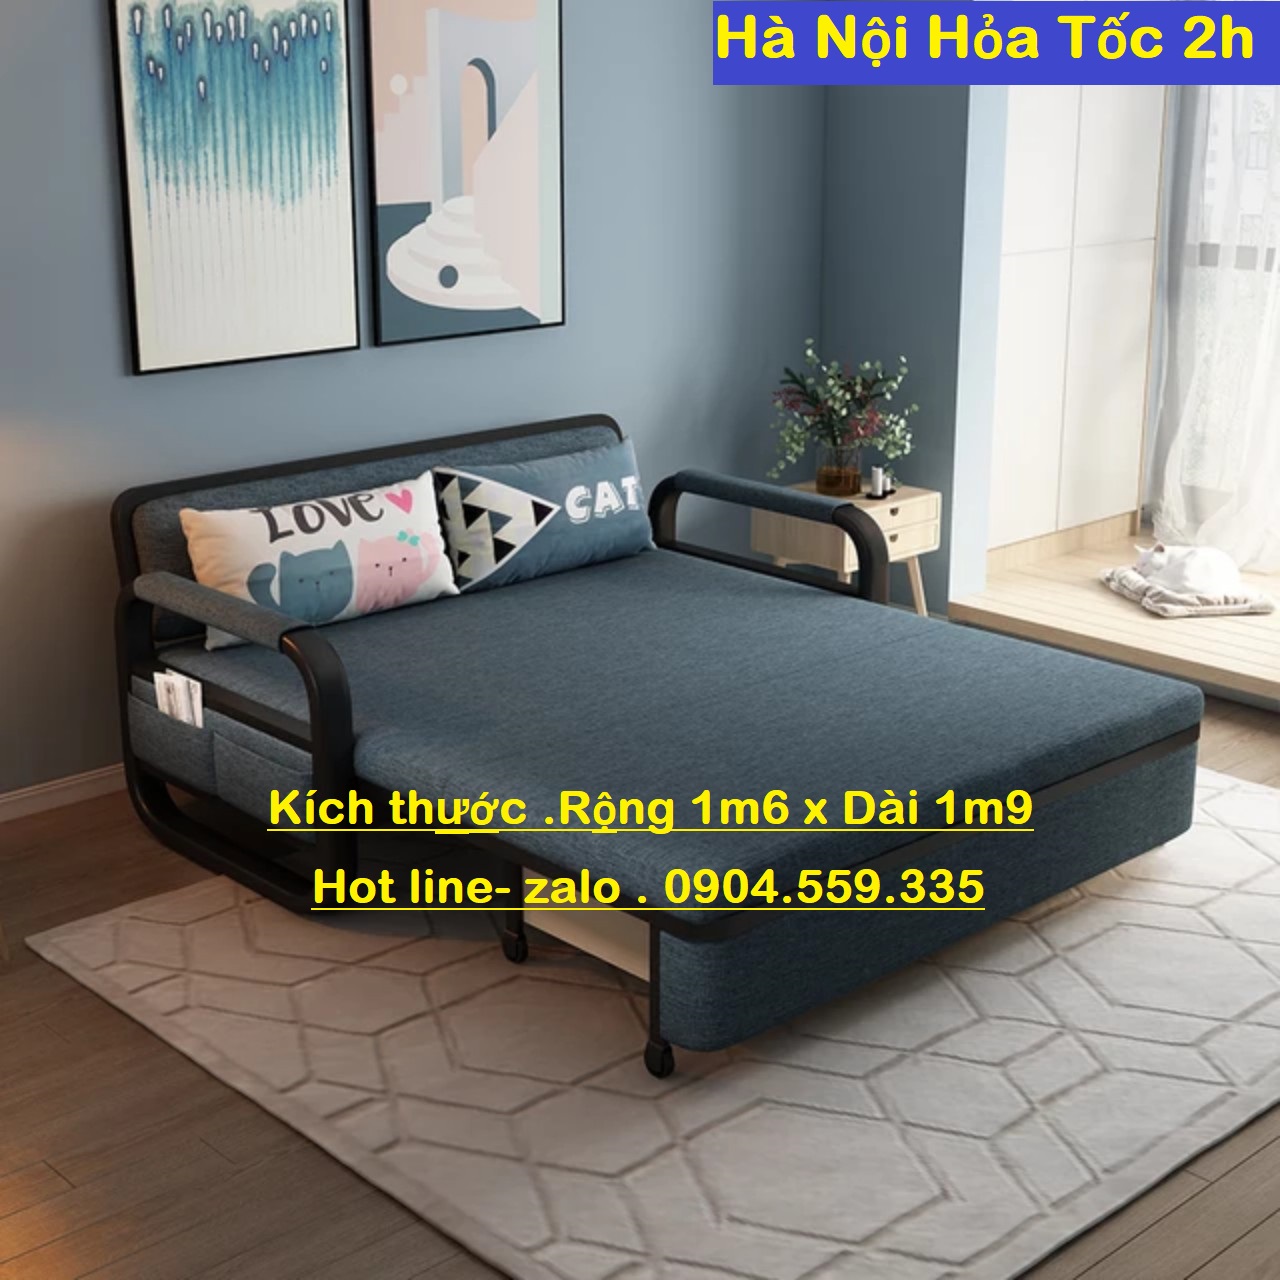 Sofa giường gấp gọn thông minh có ngăn chứa đồ , Kích thước 1m58 x 1m9 hàng nhập khẩu cao...